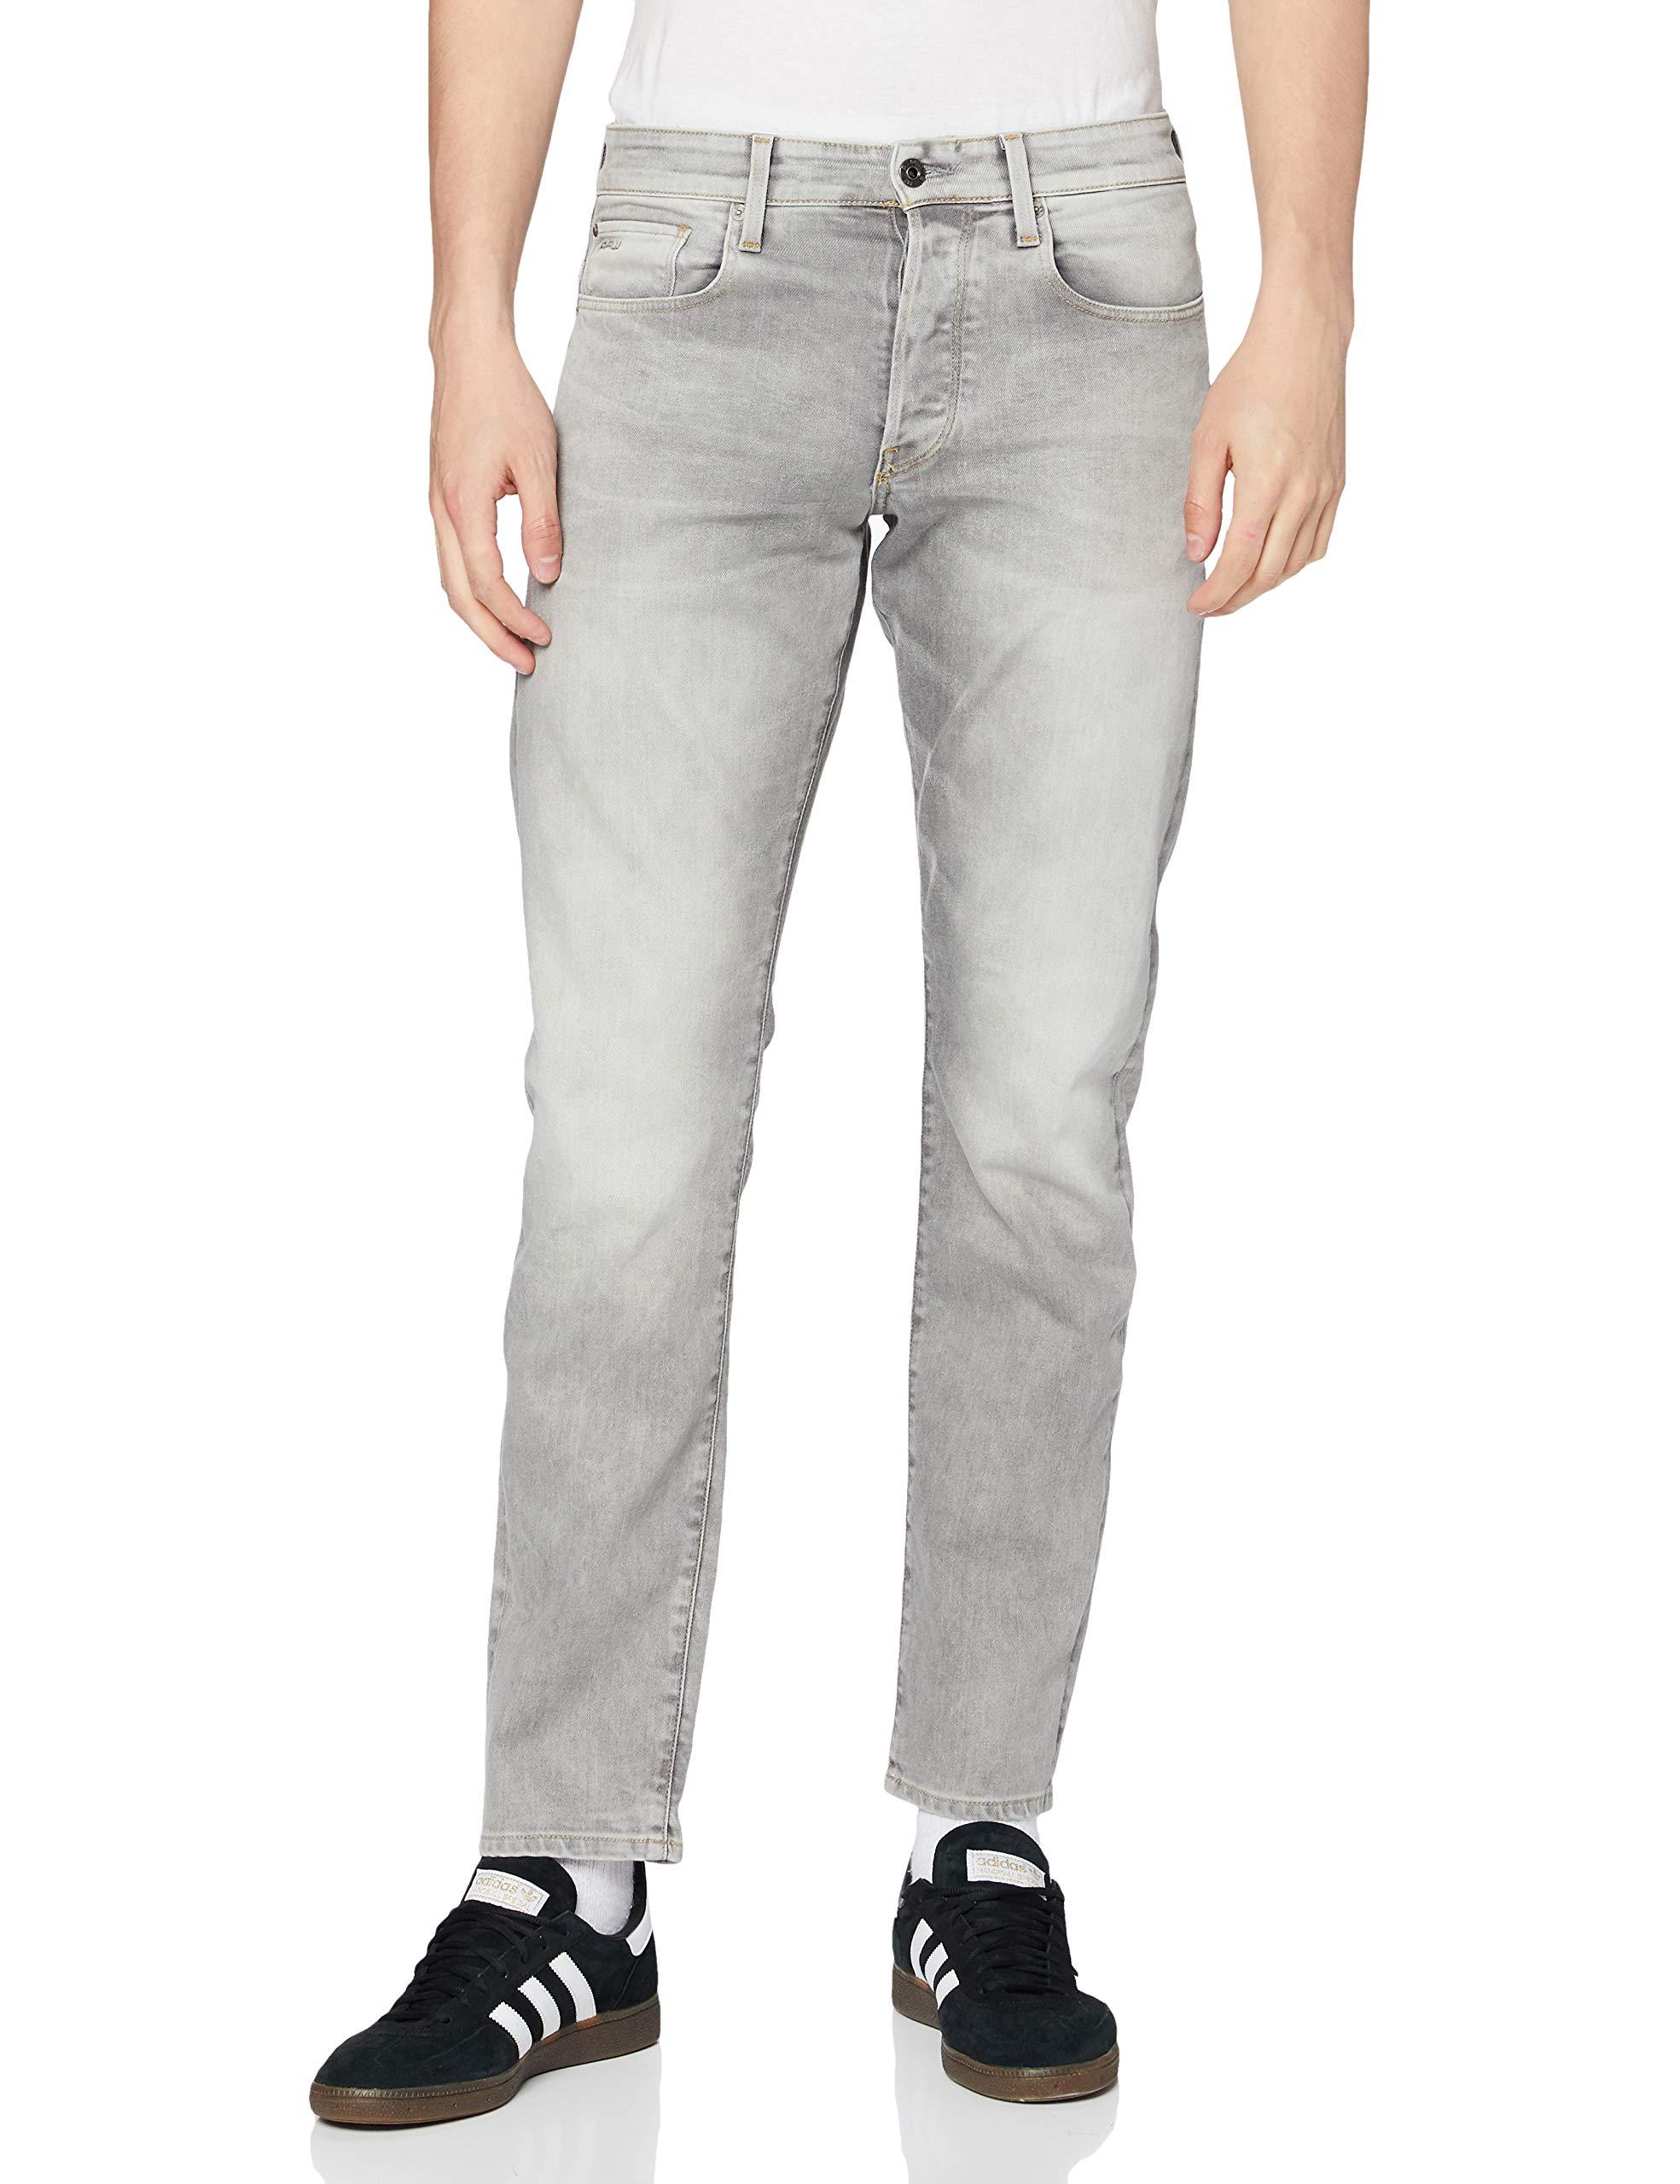 Jeans UomoG-Star RAW in Denim da Uomo colore Grigio - 51% di sconto - Lyst